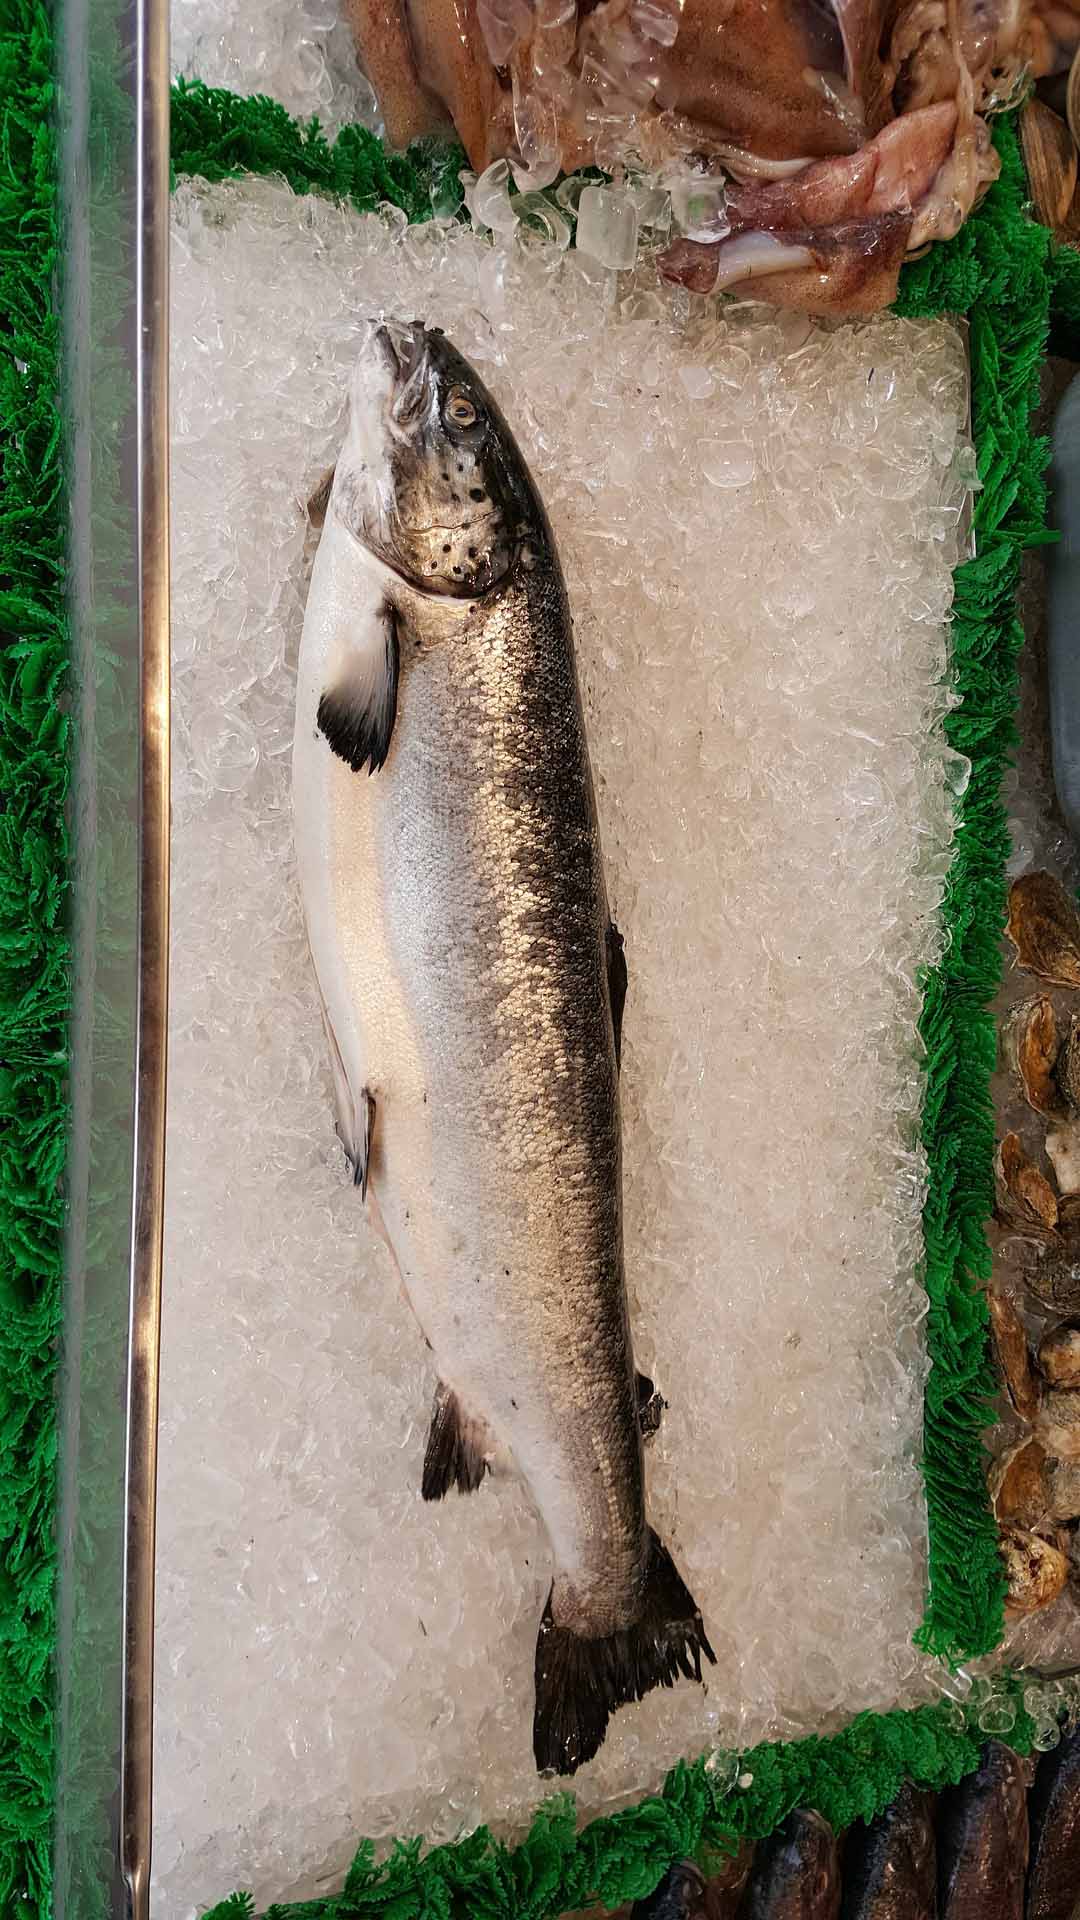 salmon-gf91a2b8cb_1920